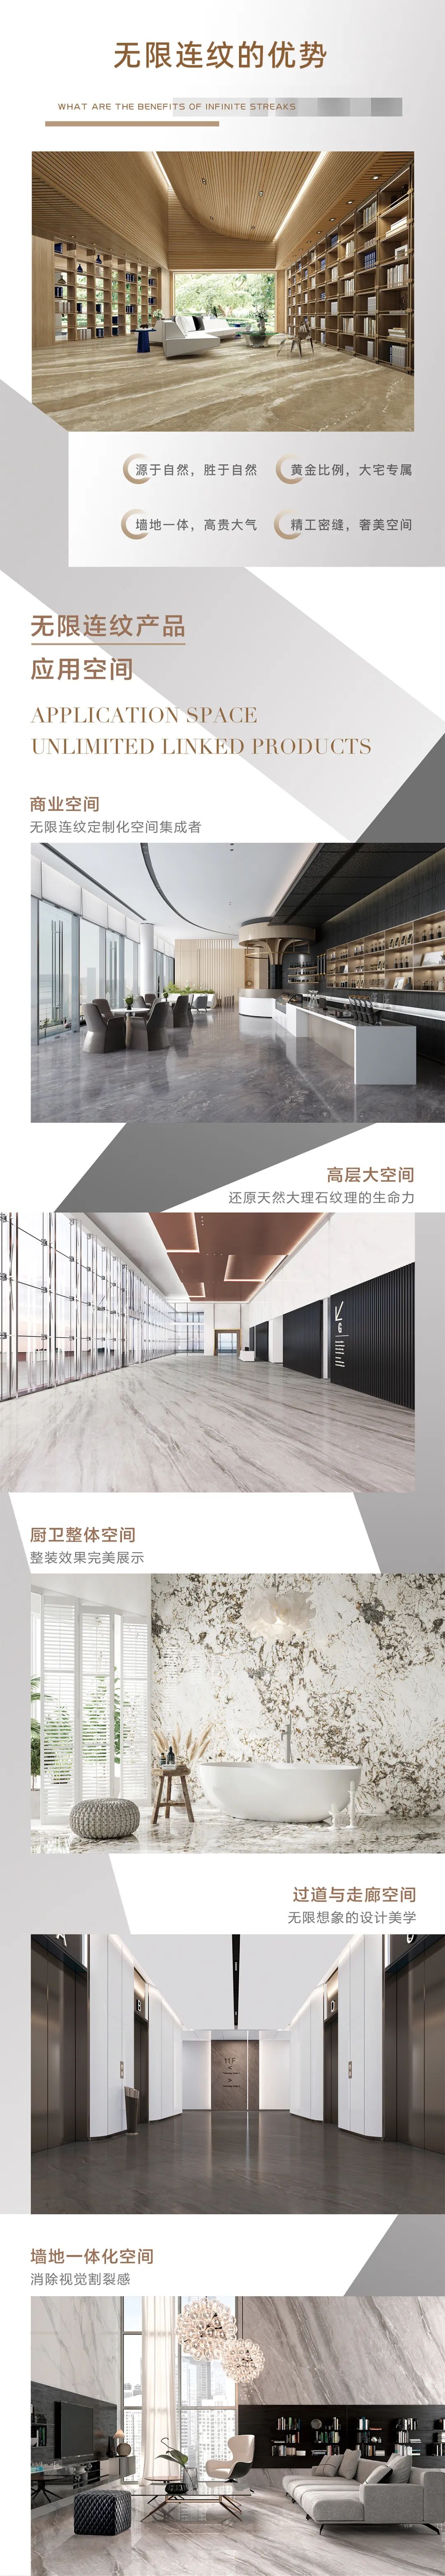 有限空间，无限连纹 丨 通利大理石瓷砖900x1800mm无限连纹新品上市(图2)